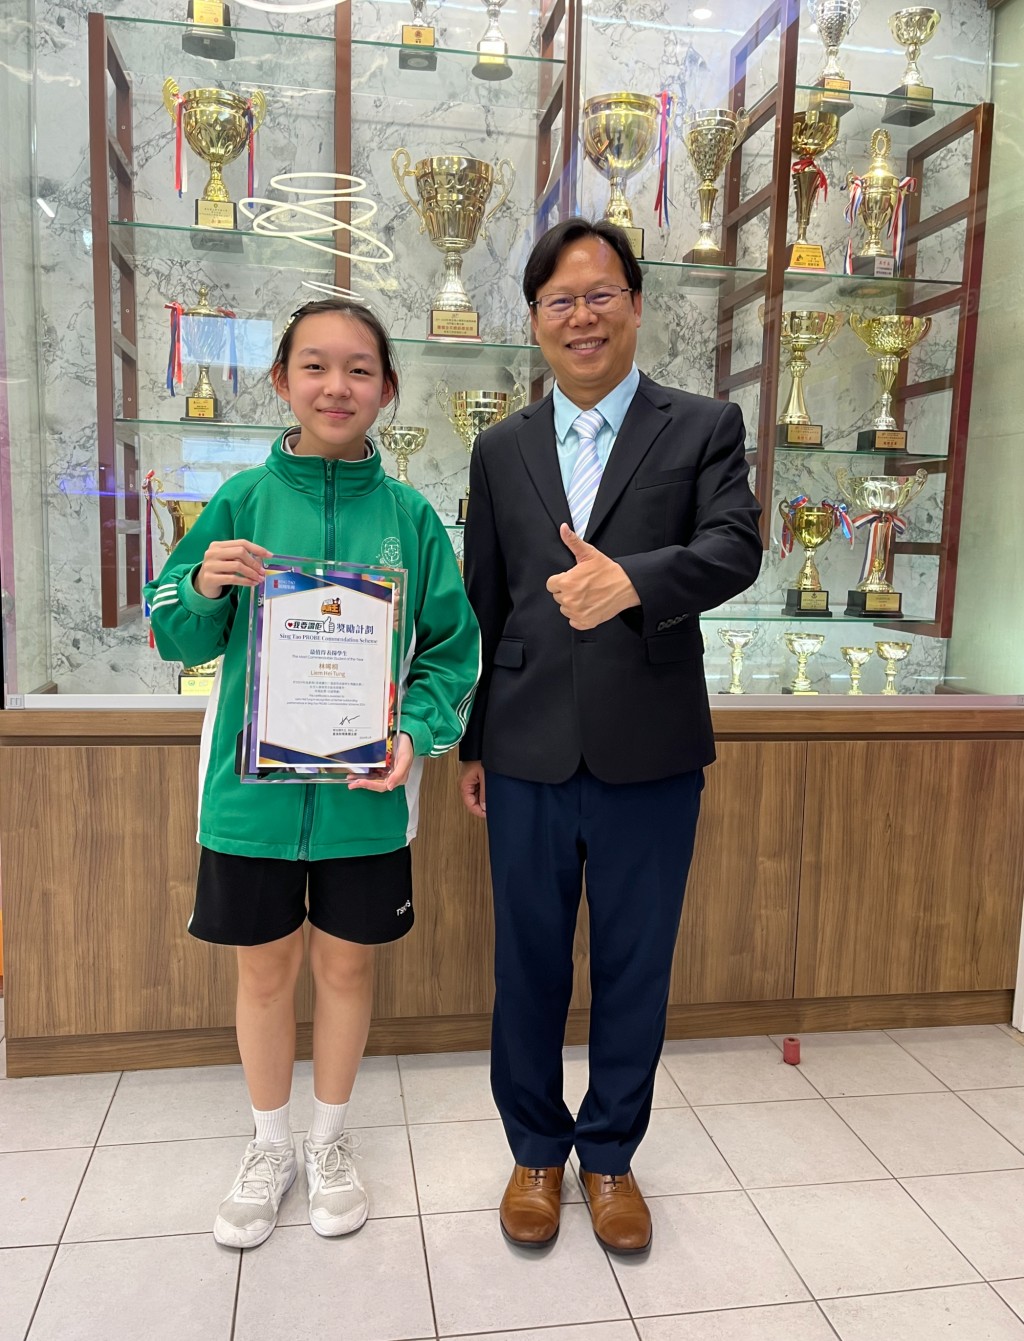 东华三院邓肇坚小学另一位得奖同学为林晞桐。